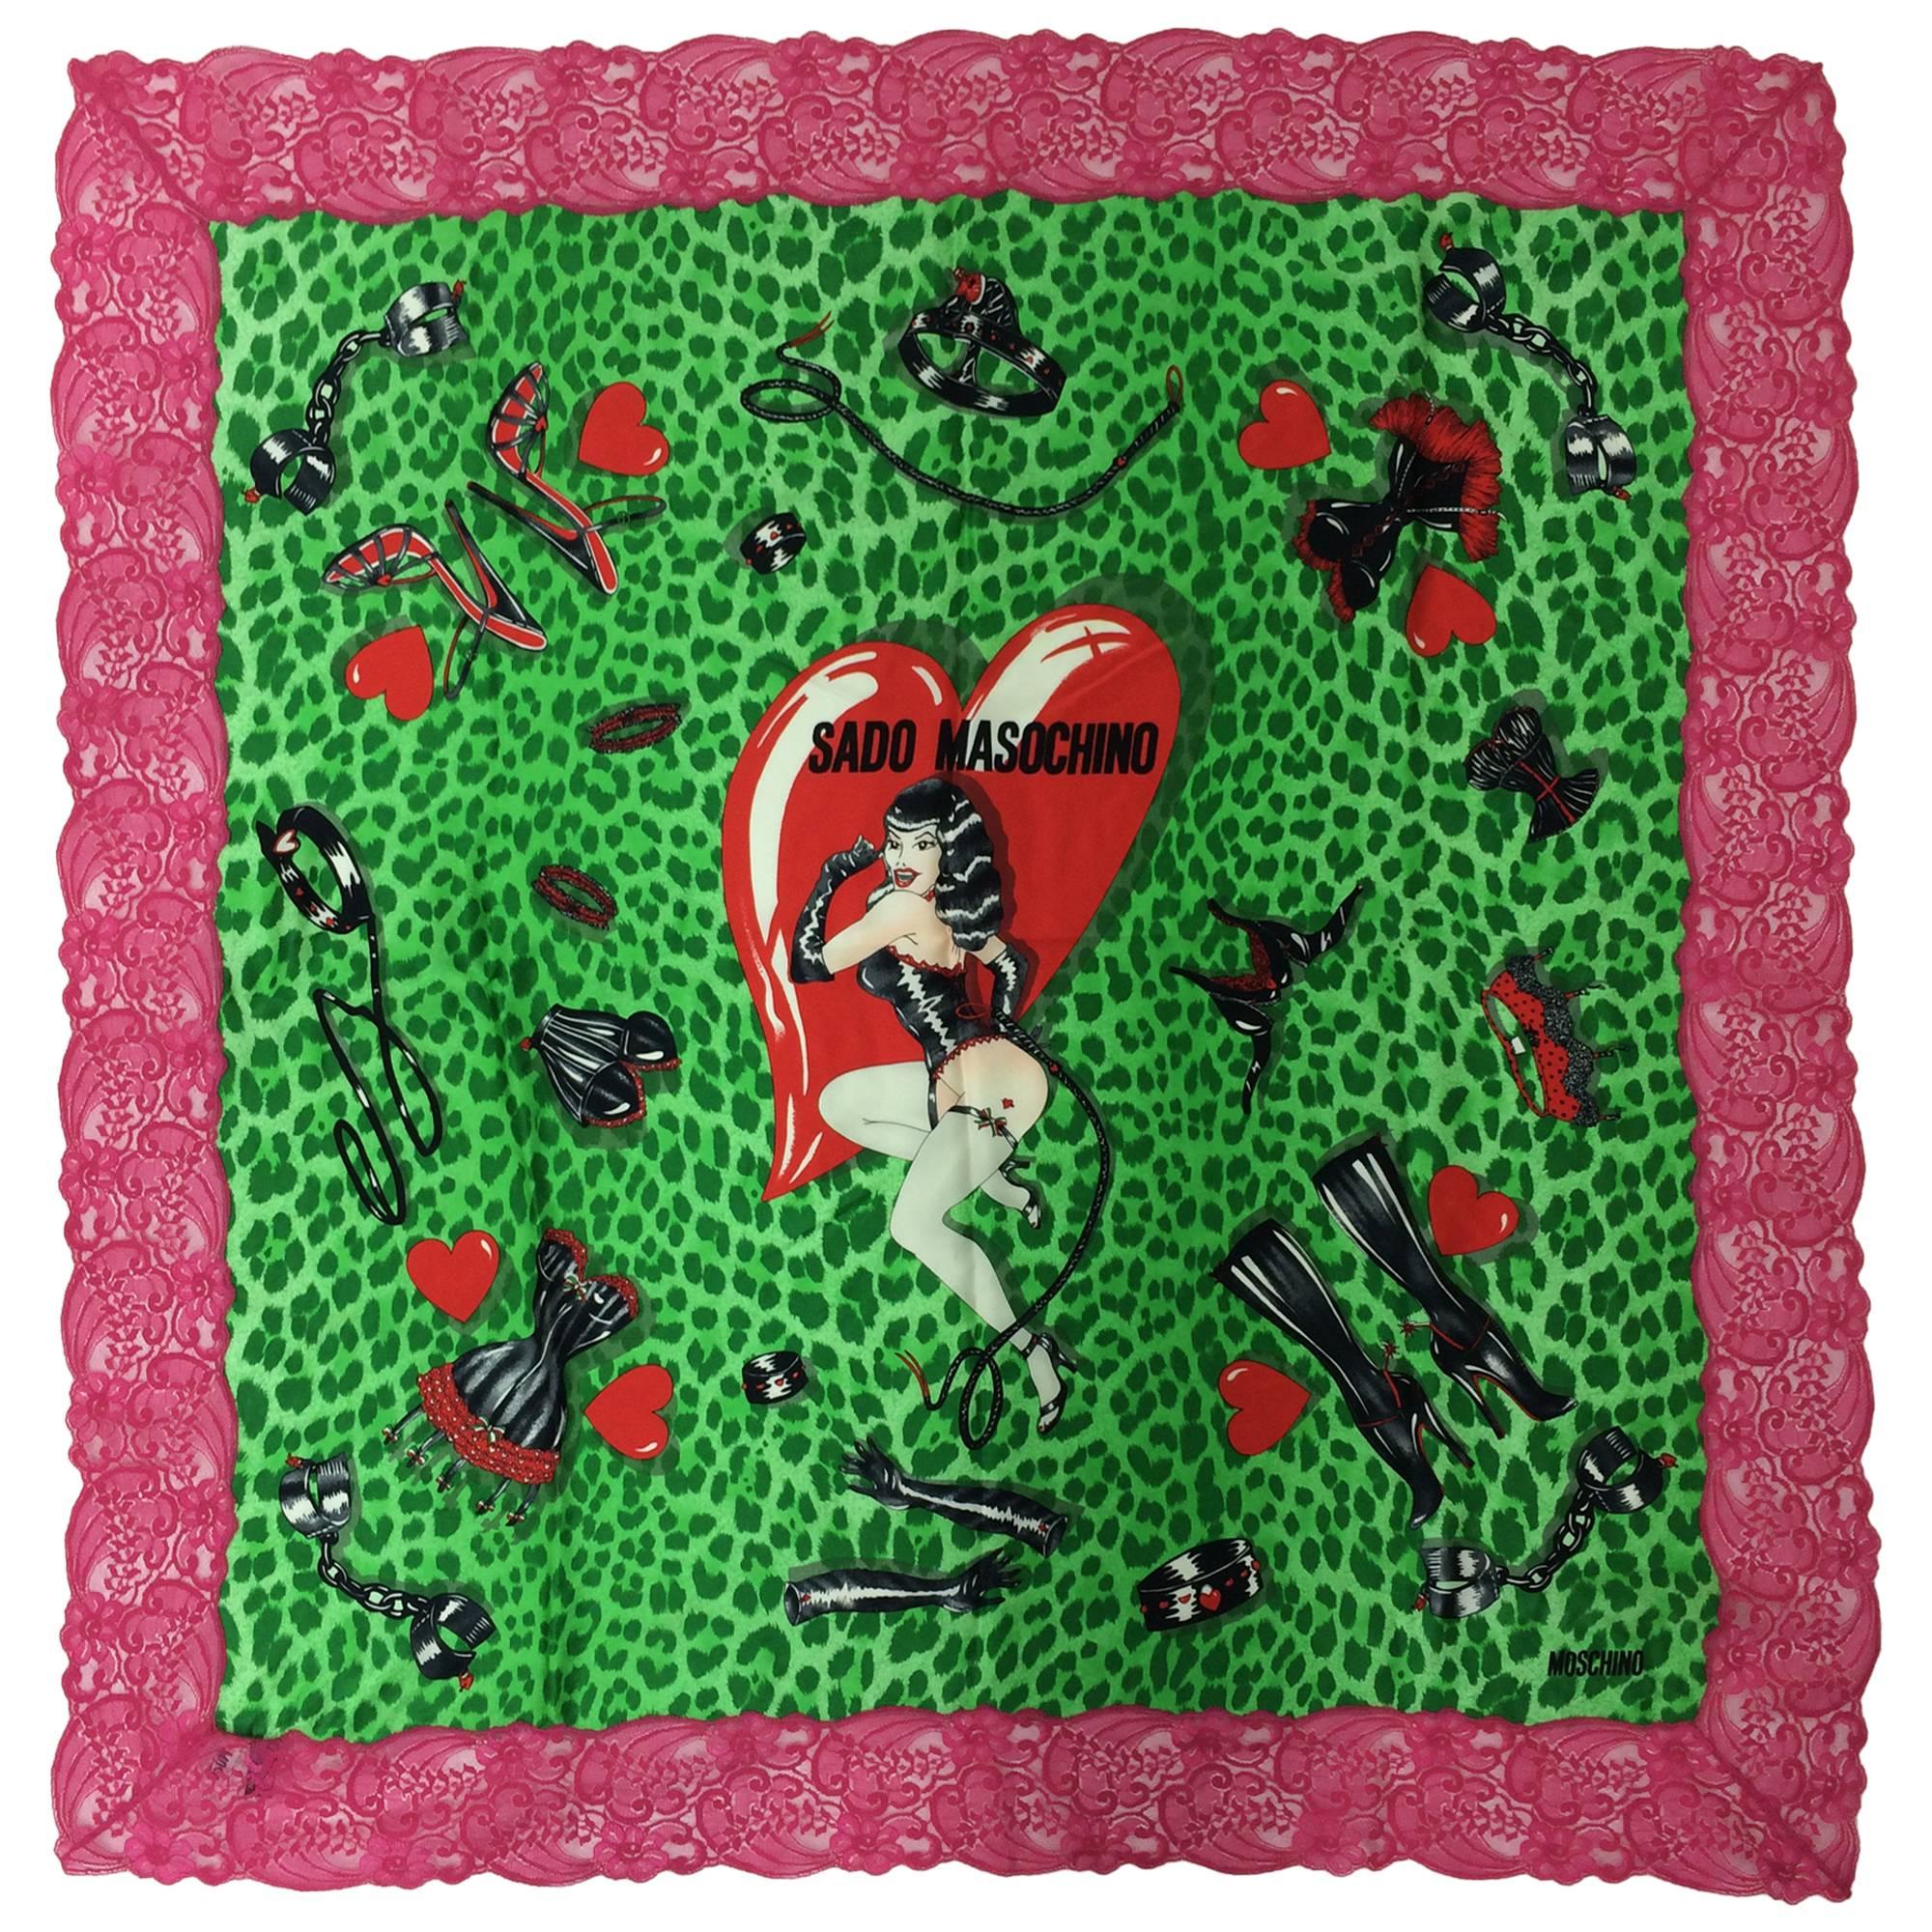 Moschino Sado Masochino large silk scarf with hot pink lace border 41" x 41"